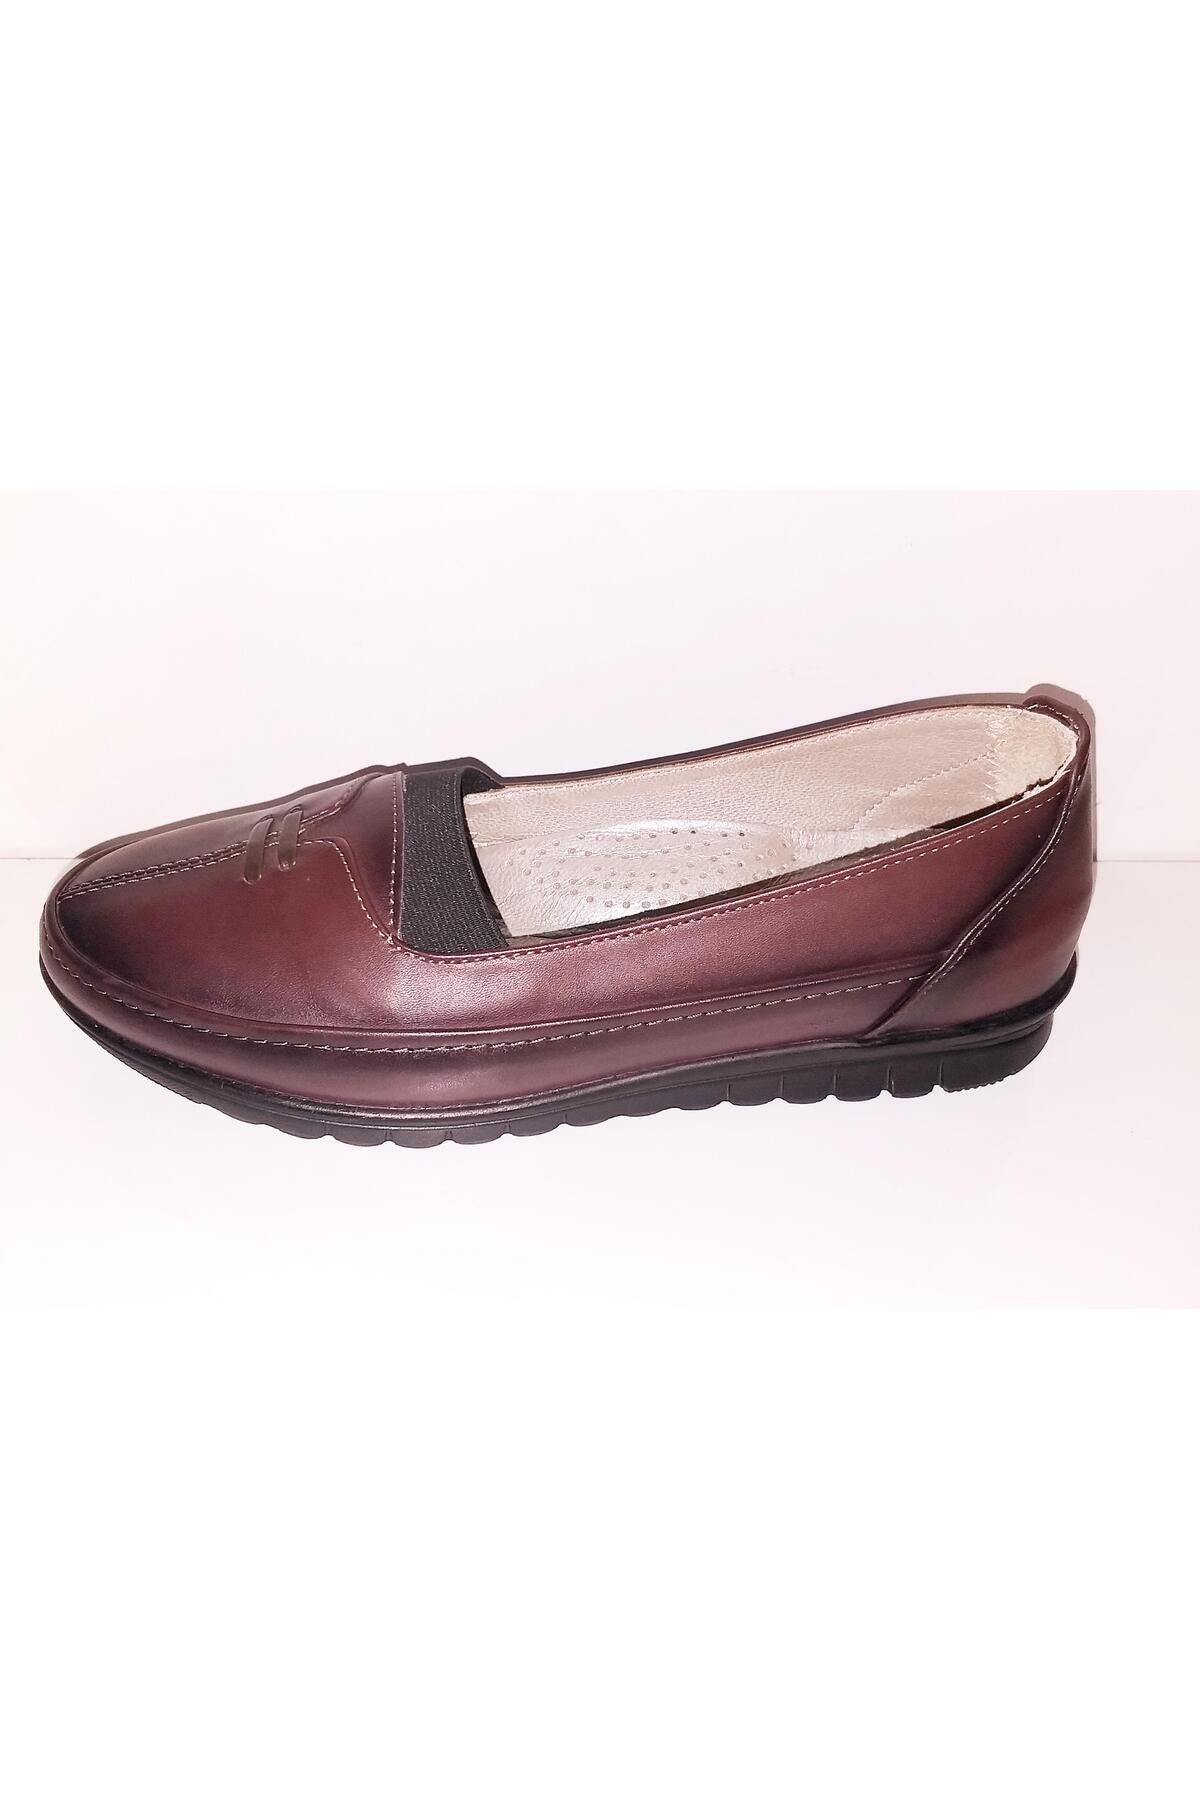 PUNTO 651438 Kadın Comfort Günlük Bağsız Ayakkabı